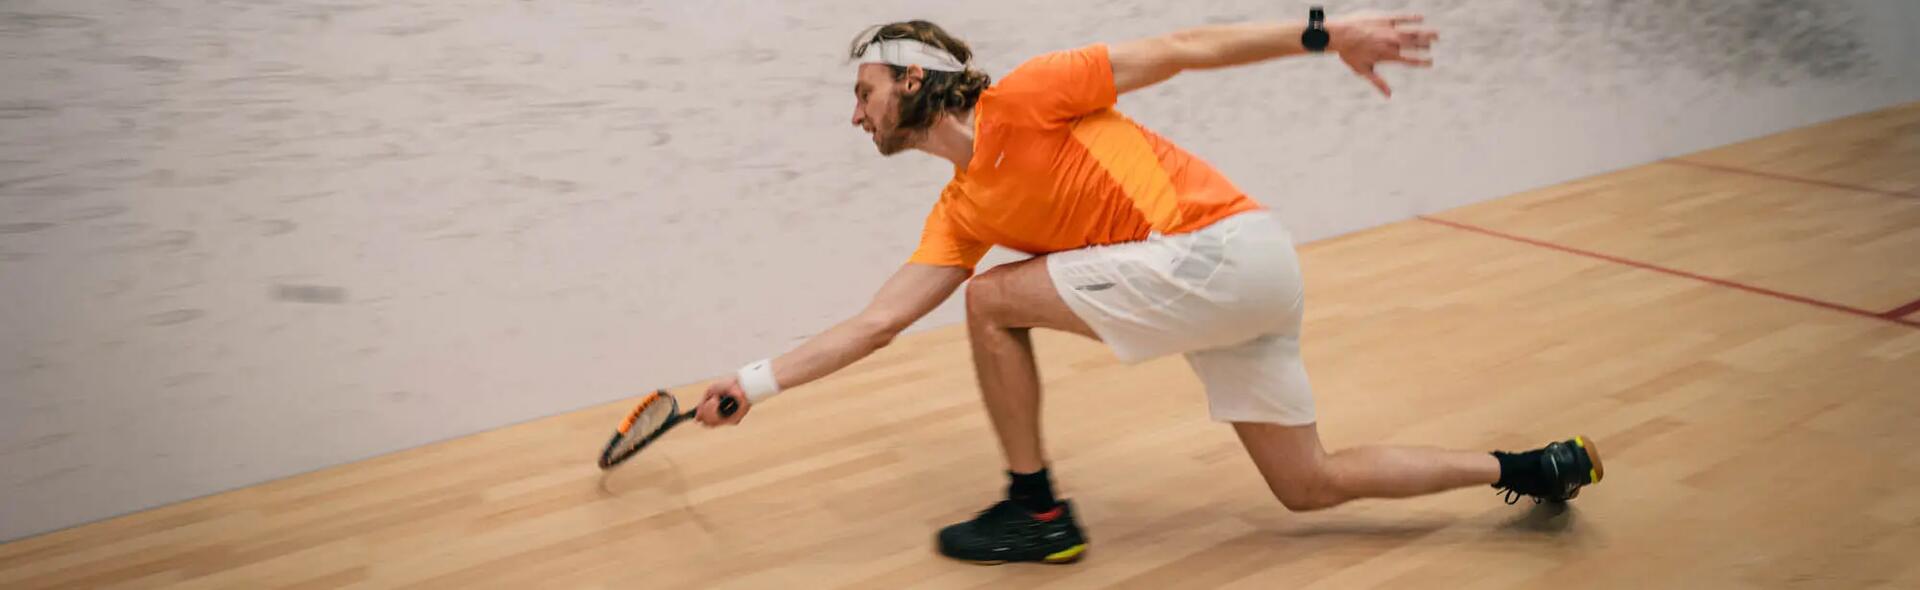 Ontdek squash: een uitdagende sport